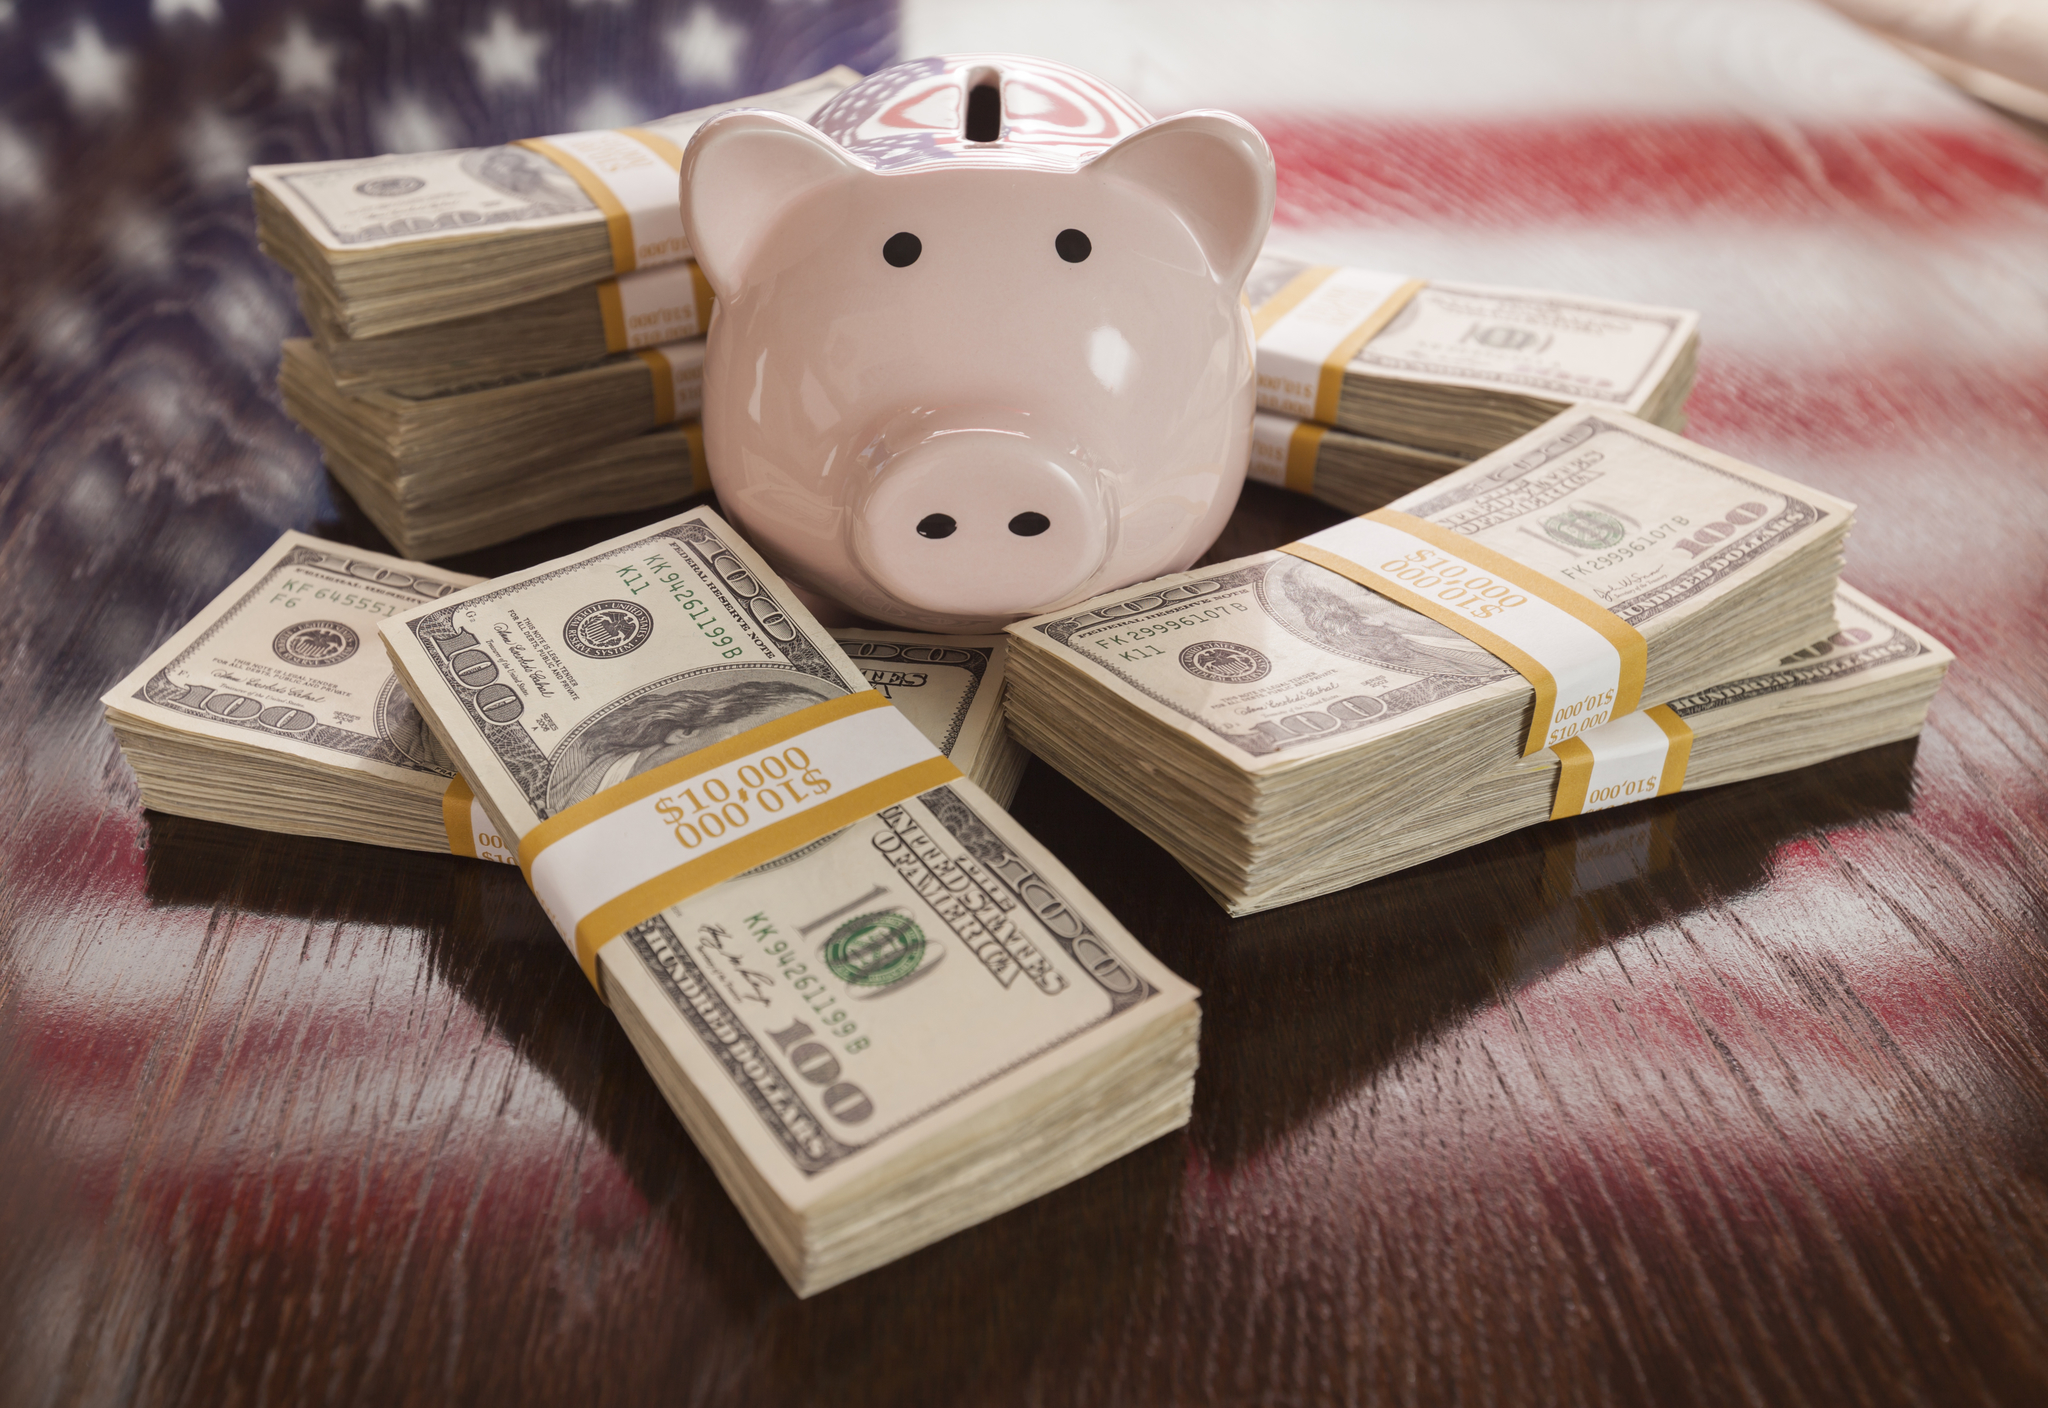 Los fondos de pensiones en EEUU permiten recuperar el capital para hacer frente a emergencias financieras.